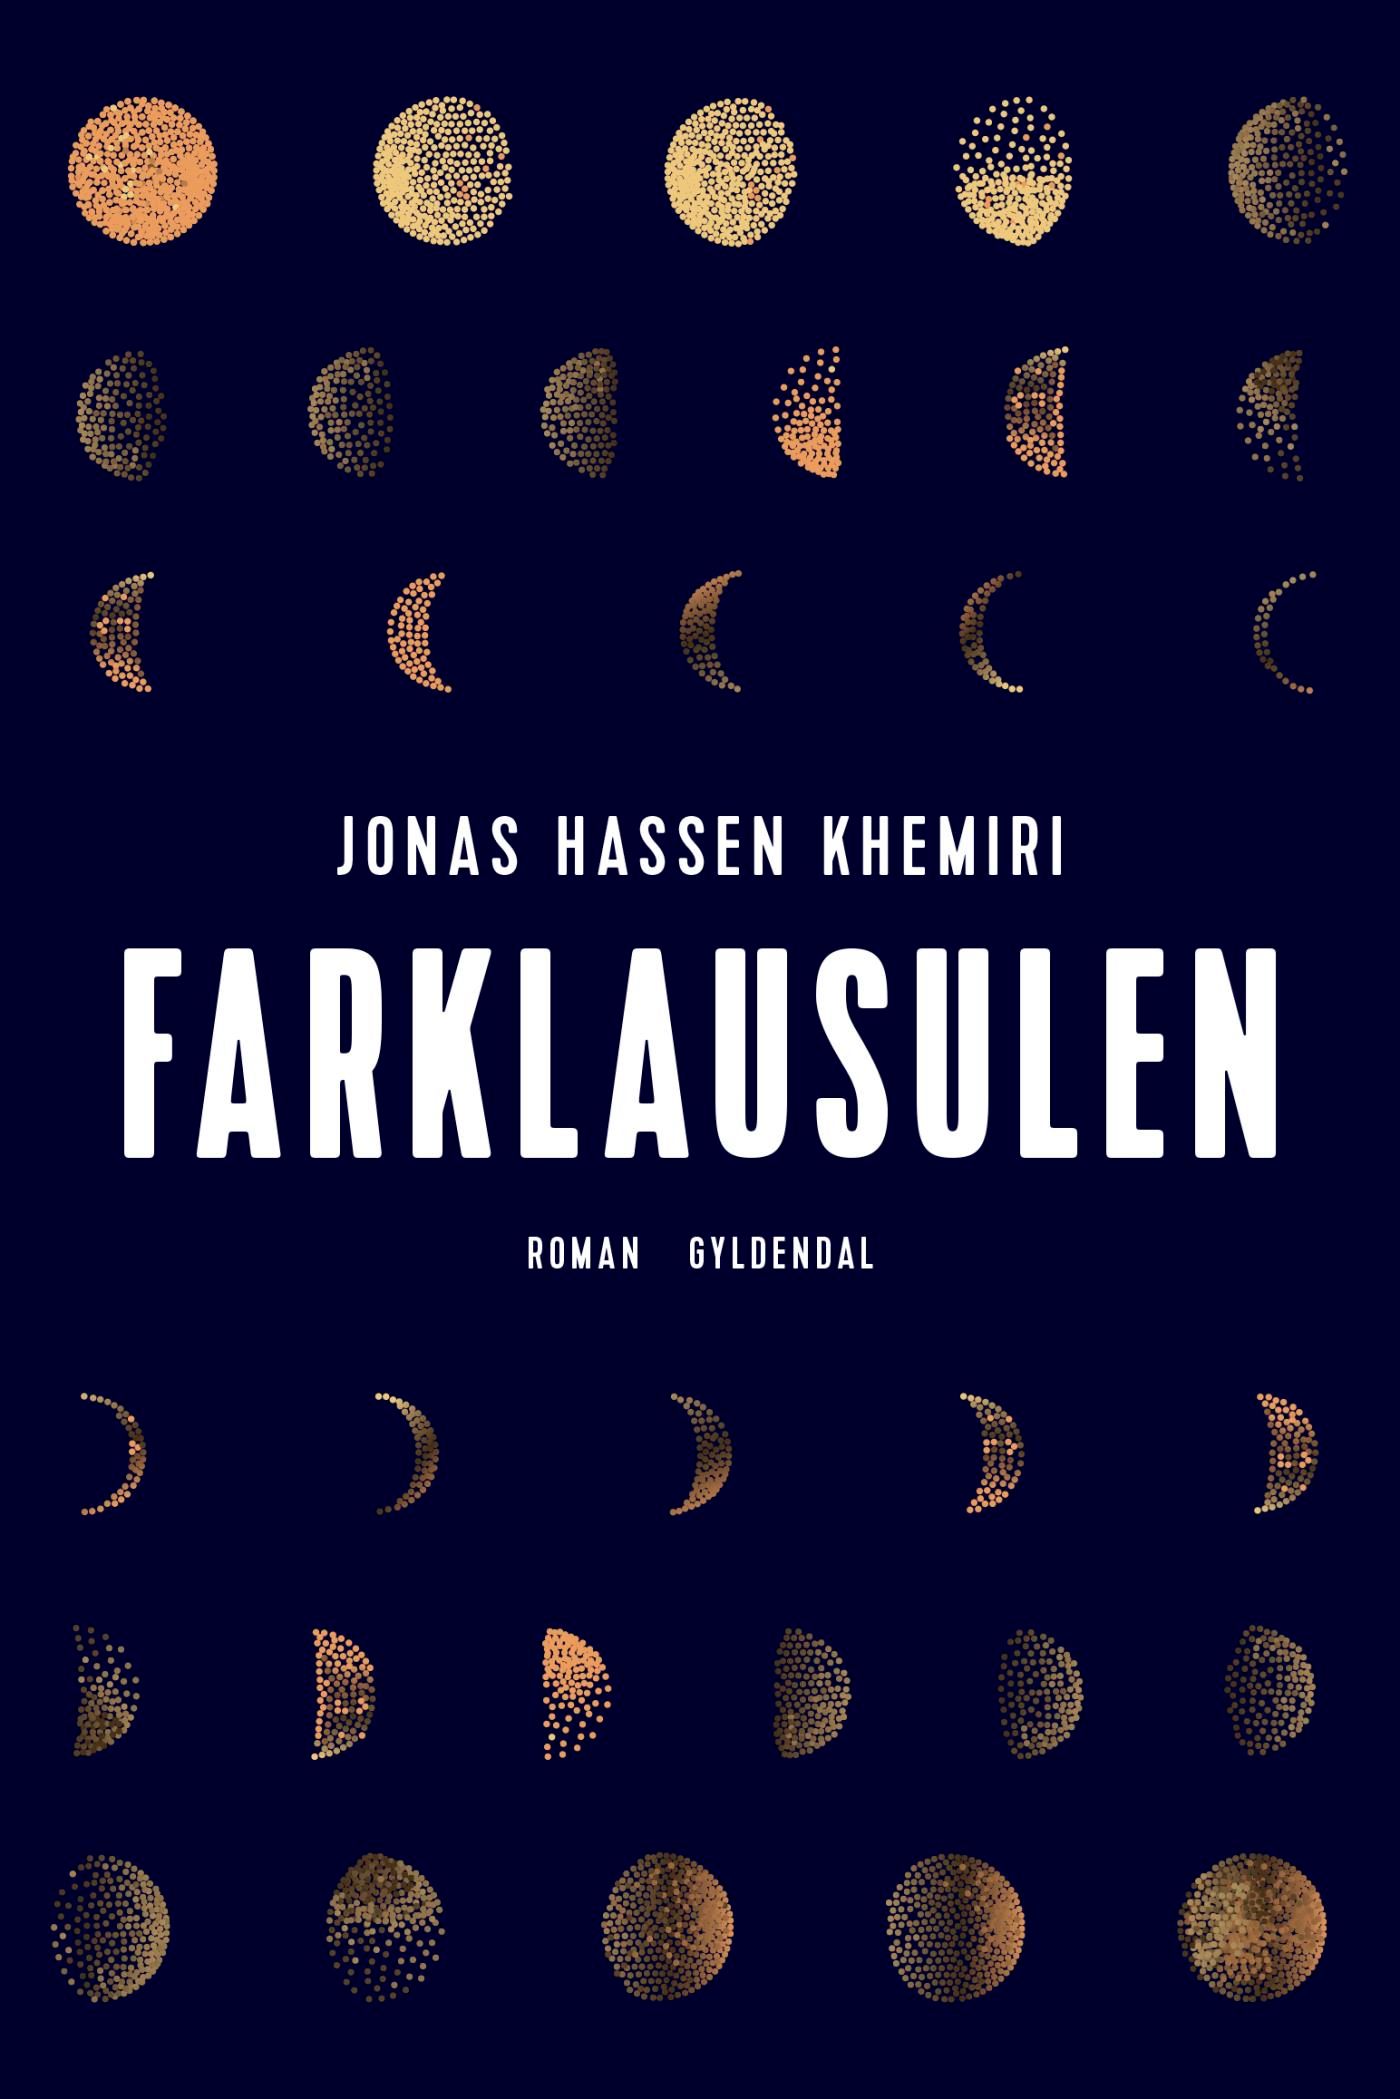 Farklausulen, e-bok av Jonas Hassen Khemiri